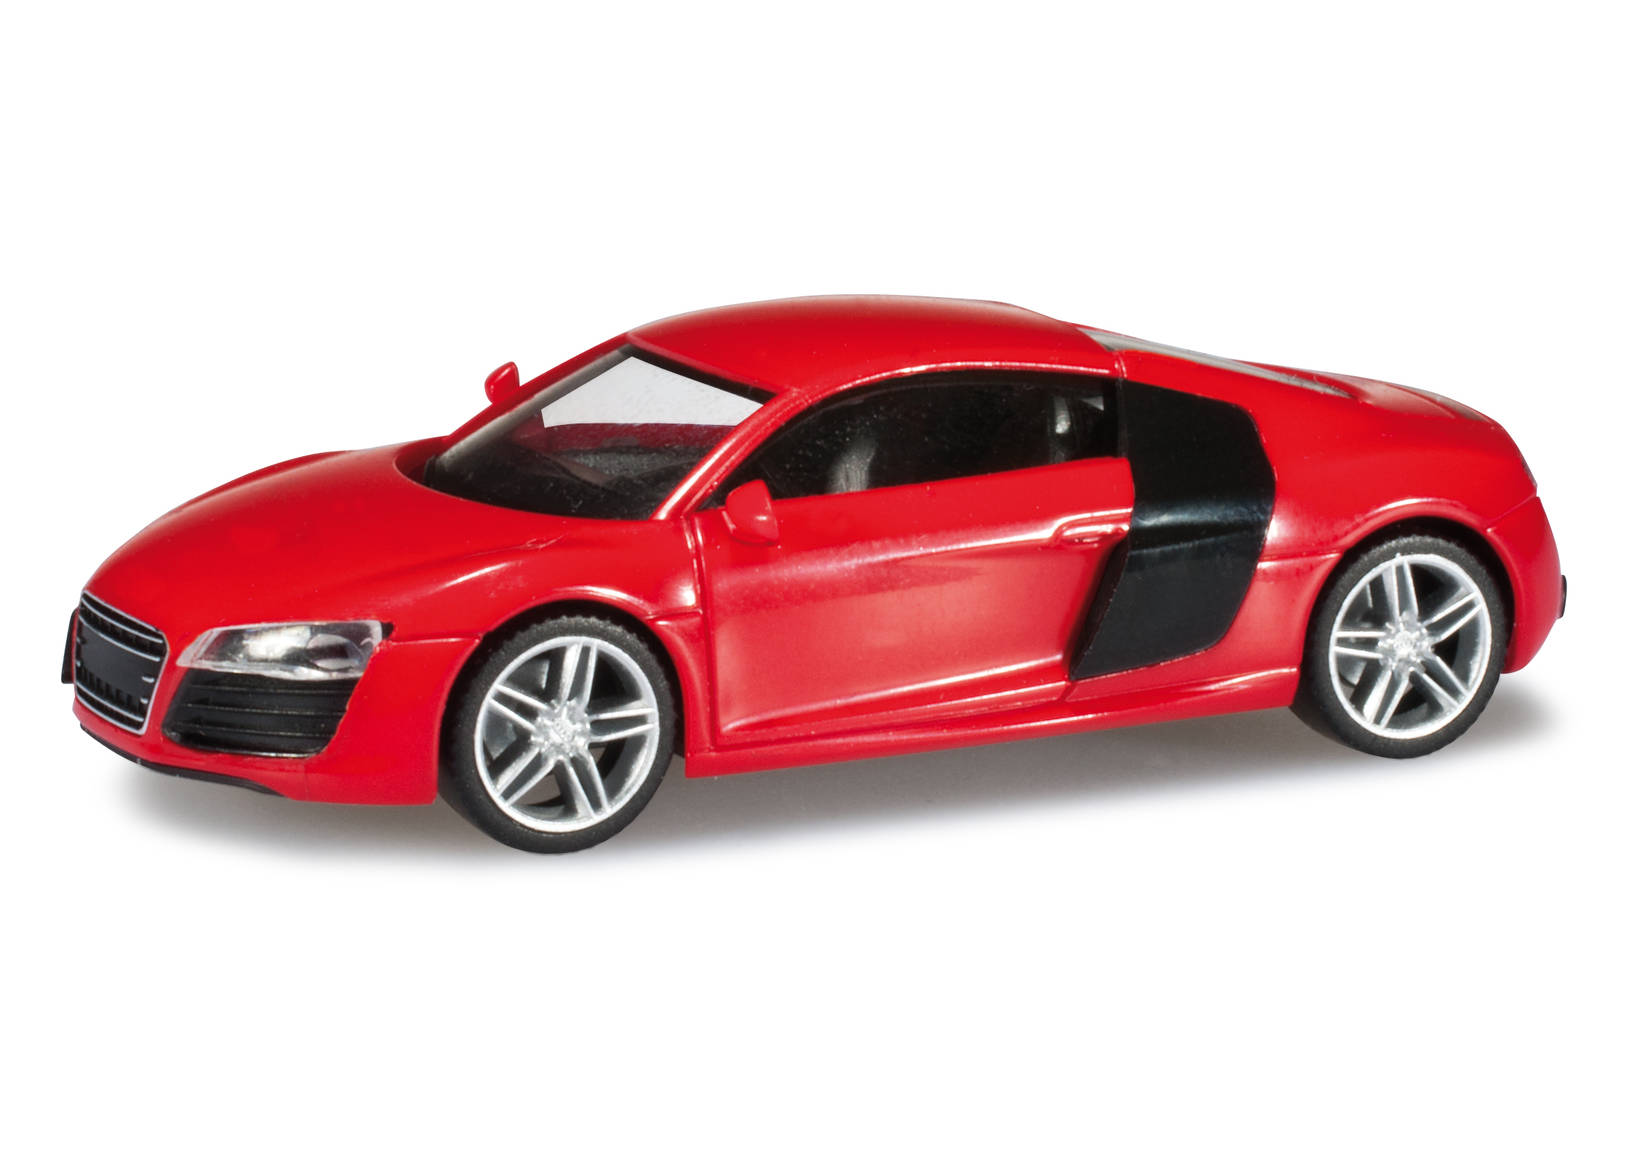 Audi R8 facelift, brilliant red